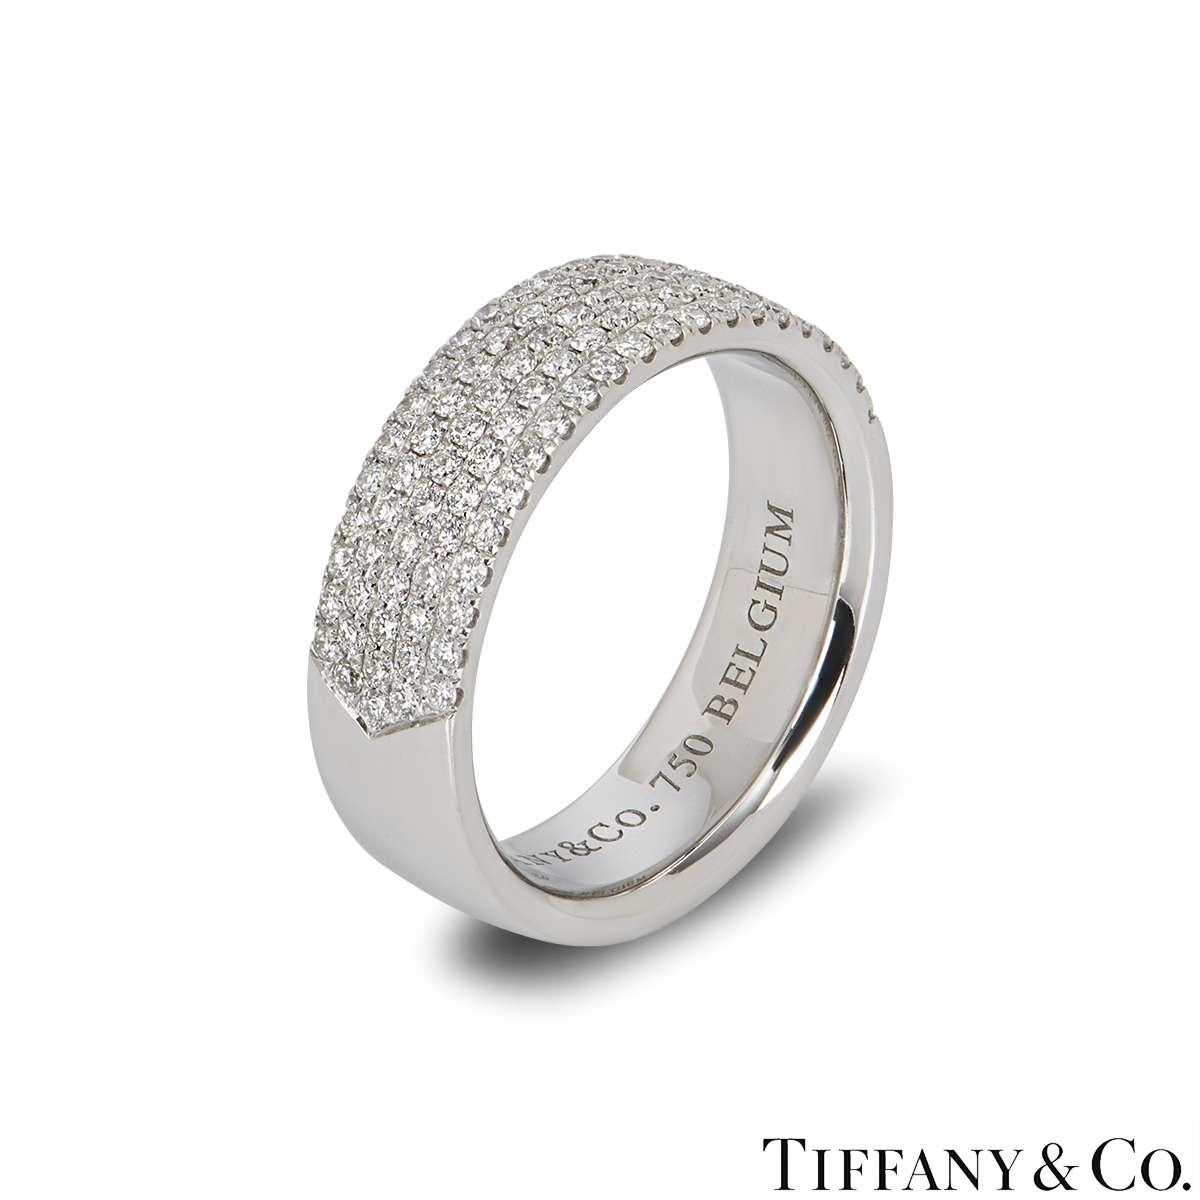 Un precioso anillo de oro blanco de 18 quilates con diamantes de Tiffany & Co. El anillo consta de 5 filas de diamantes redondos de talla brillante a mitad de la banda, con un peso total de 0,76 ct, color G y claridad VS. El anillo es una banda de